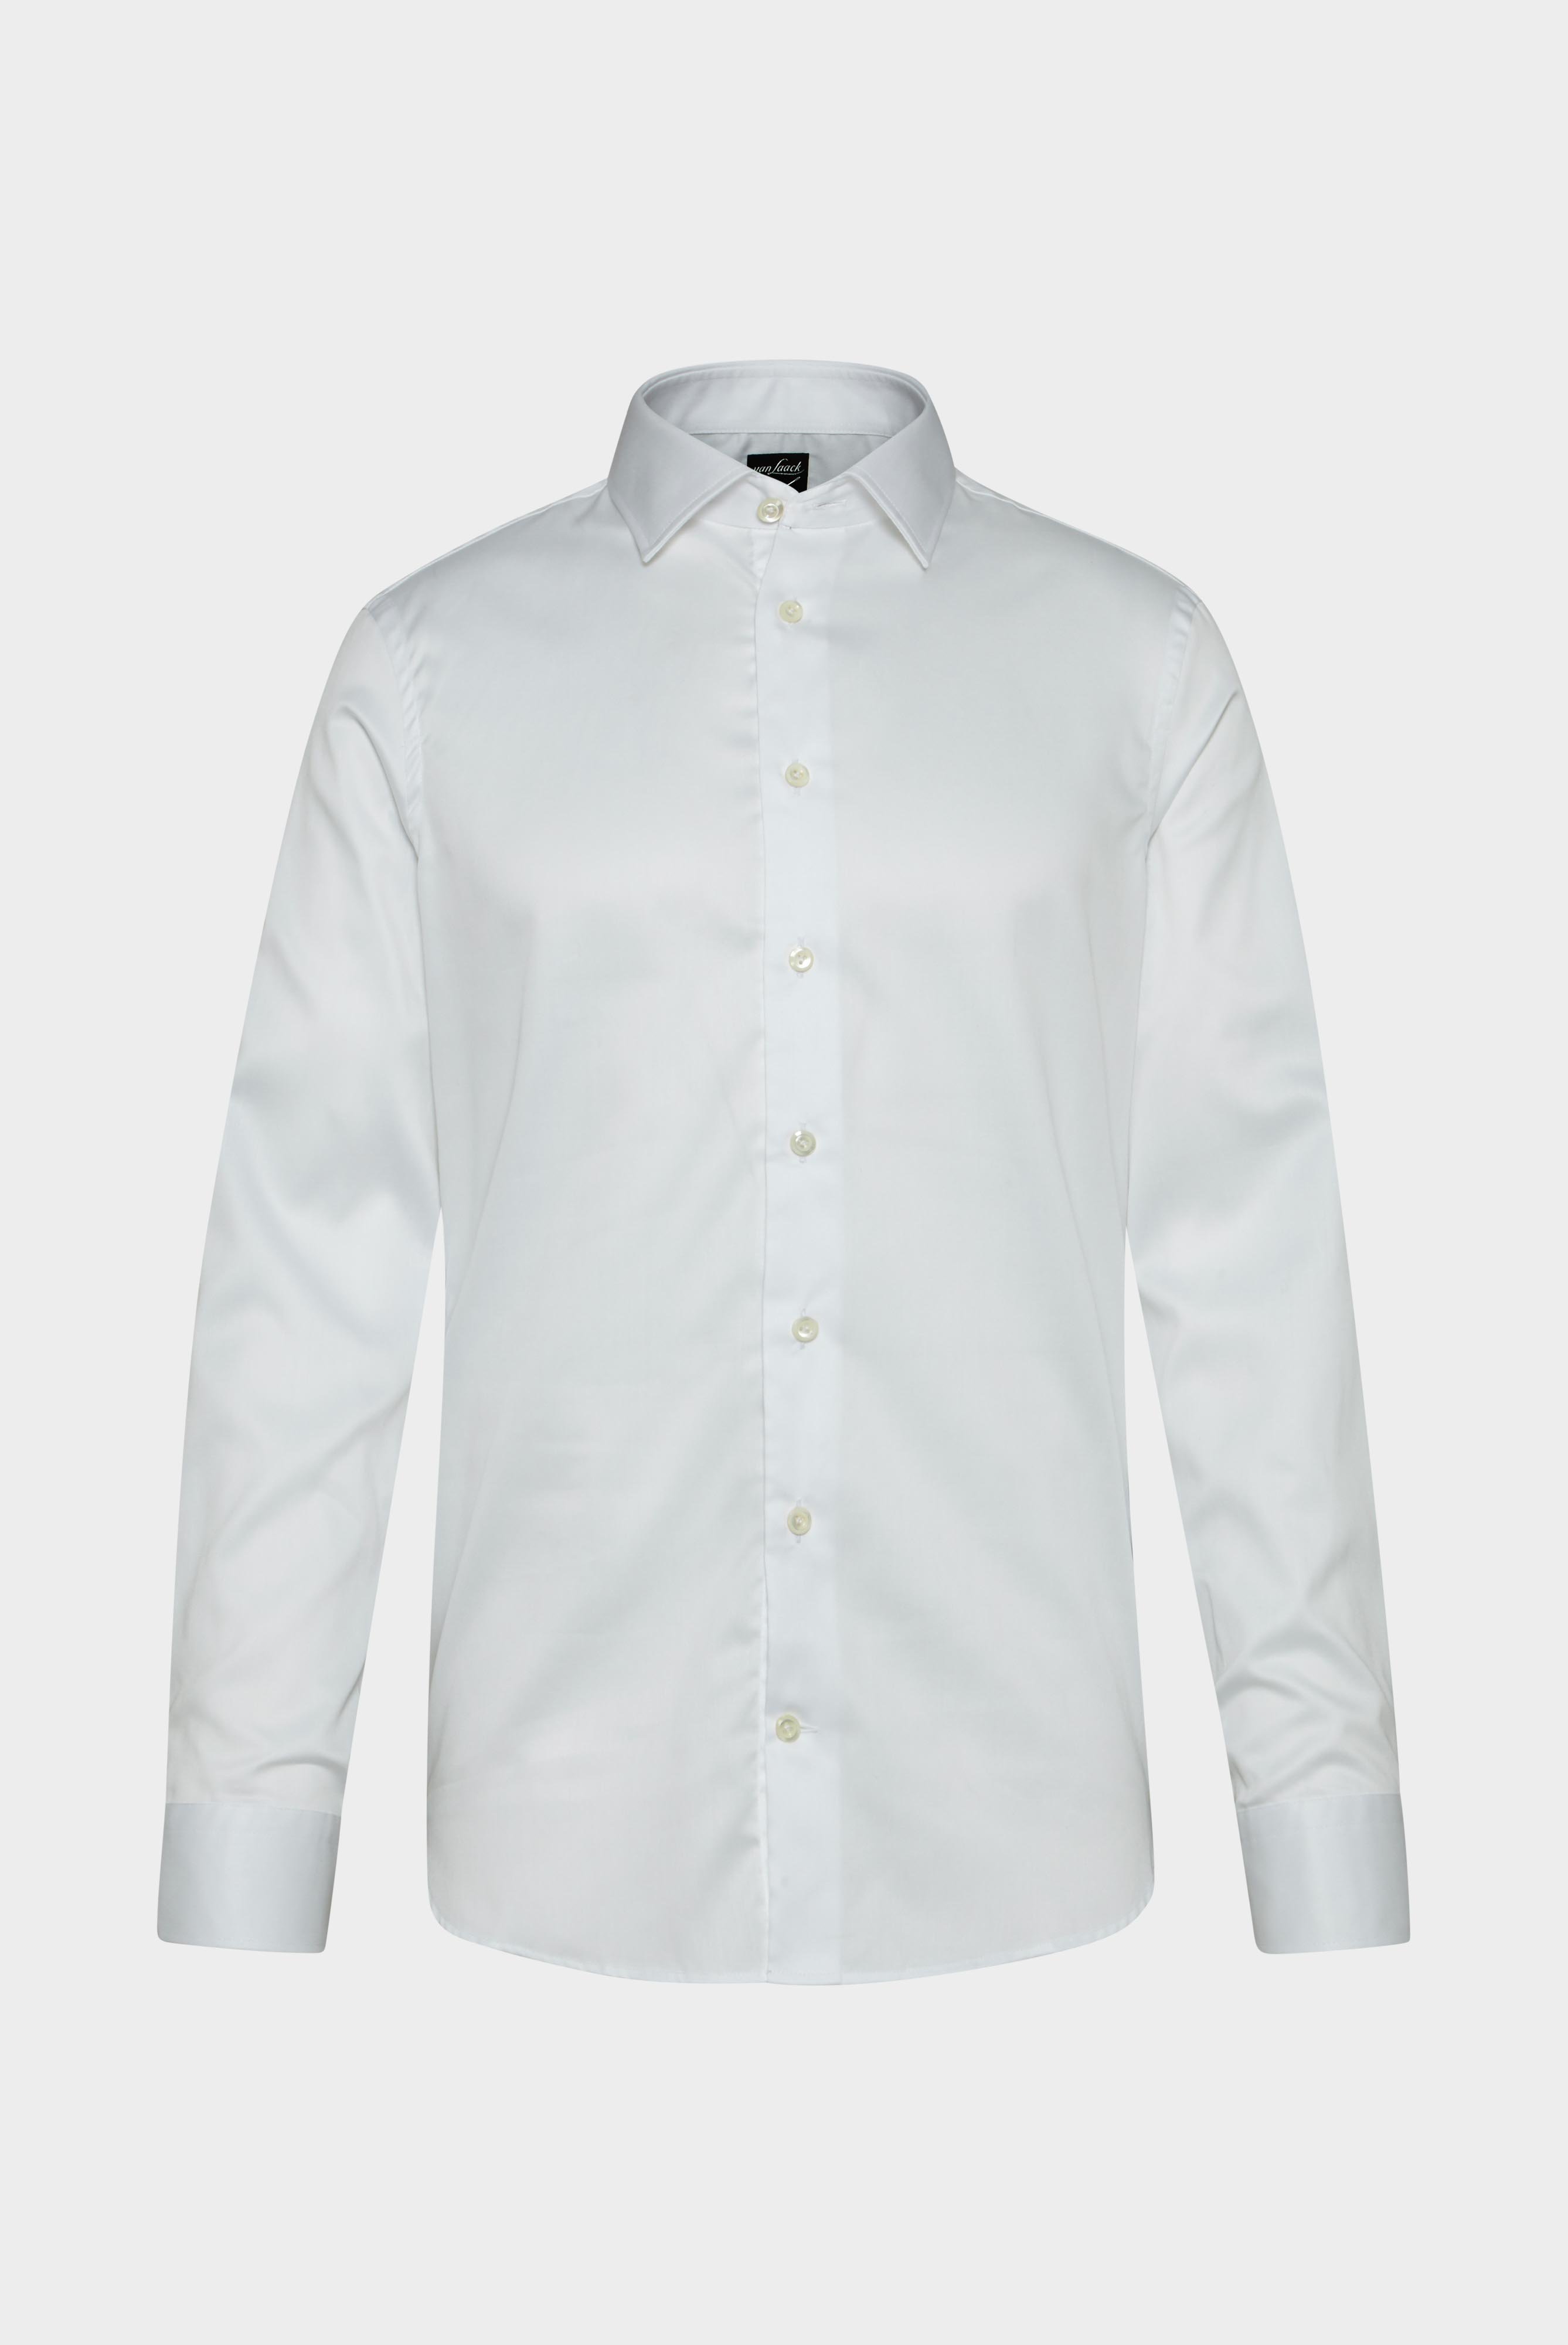 Bügelleichte Hemden+Bügelfreies Twill Hemd Slim Fit+20.2010.BQ.132241.000.37